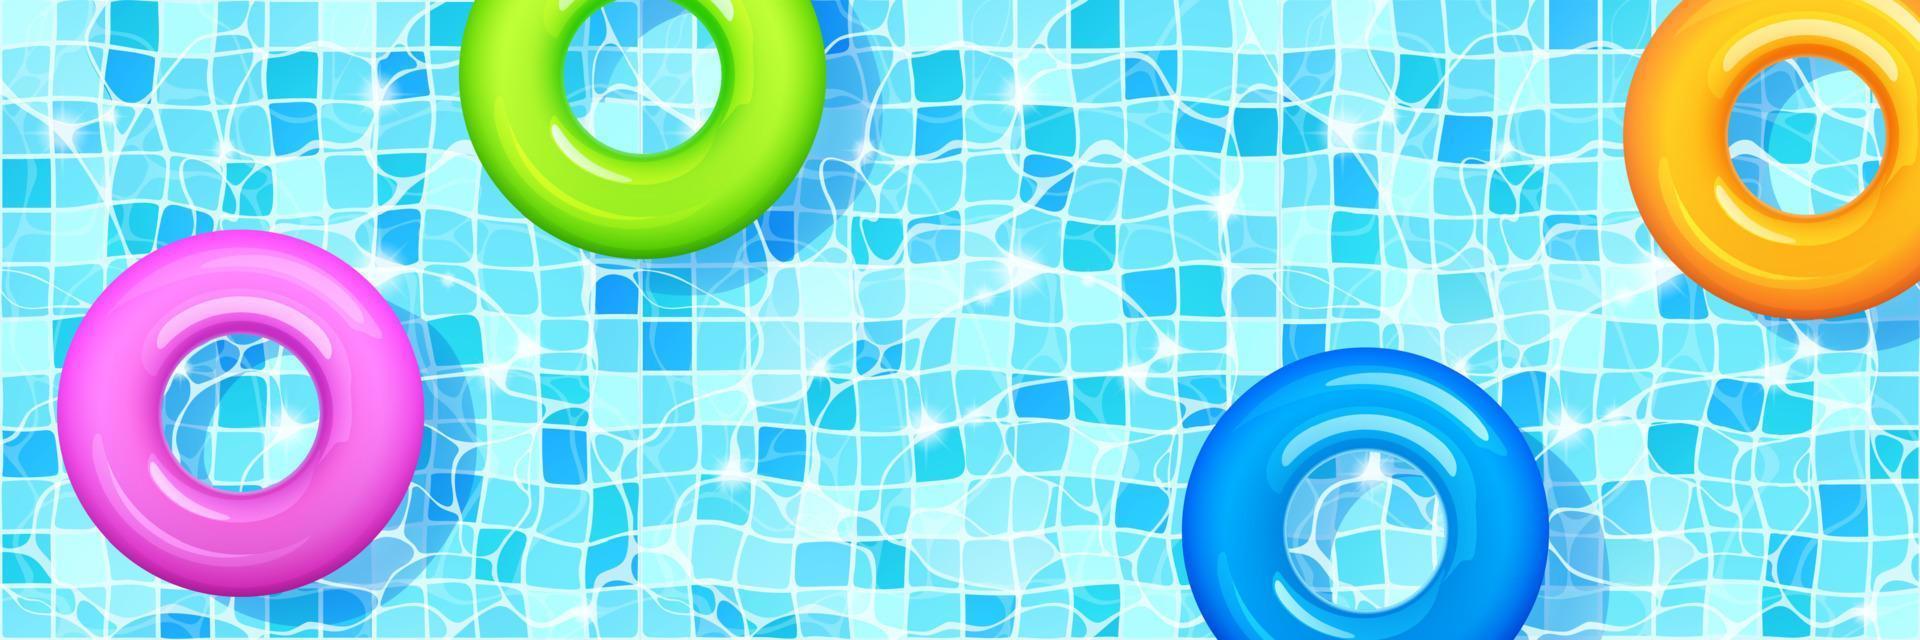 piscine avec anneaux gonflables colorés. vecteur